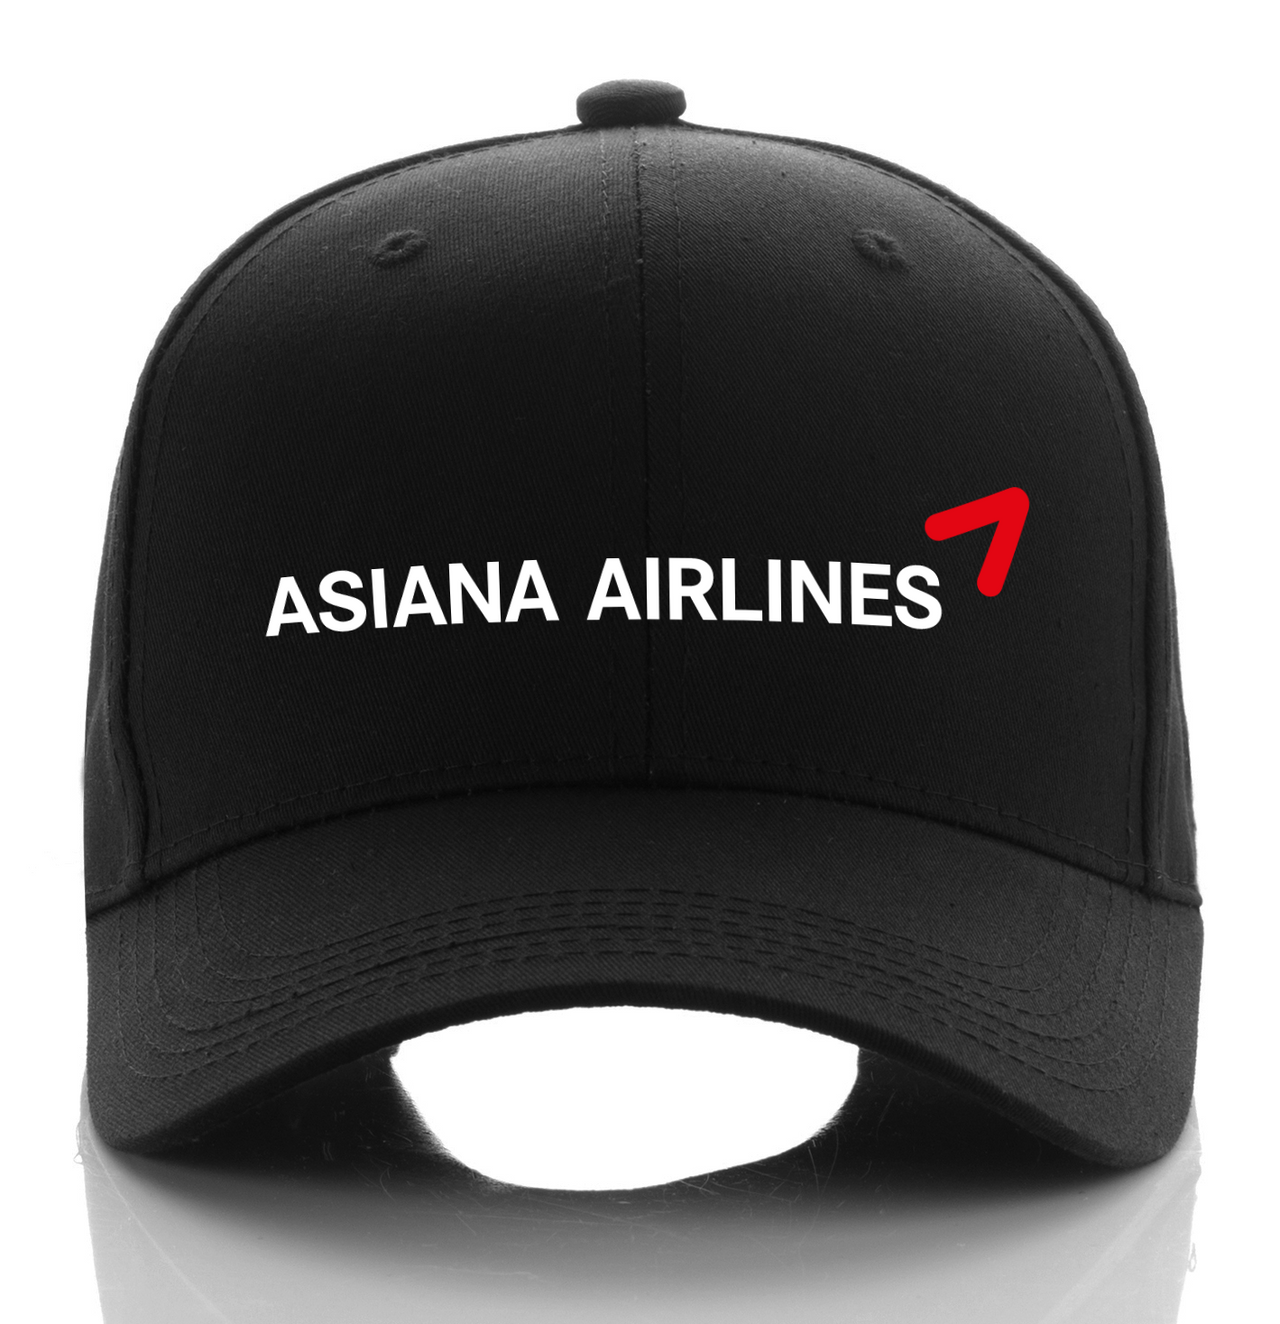 ASIAN AIRLINE DESIGNED CAP